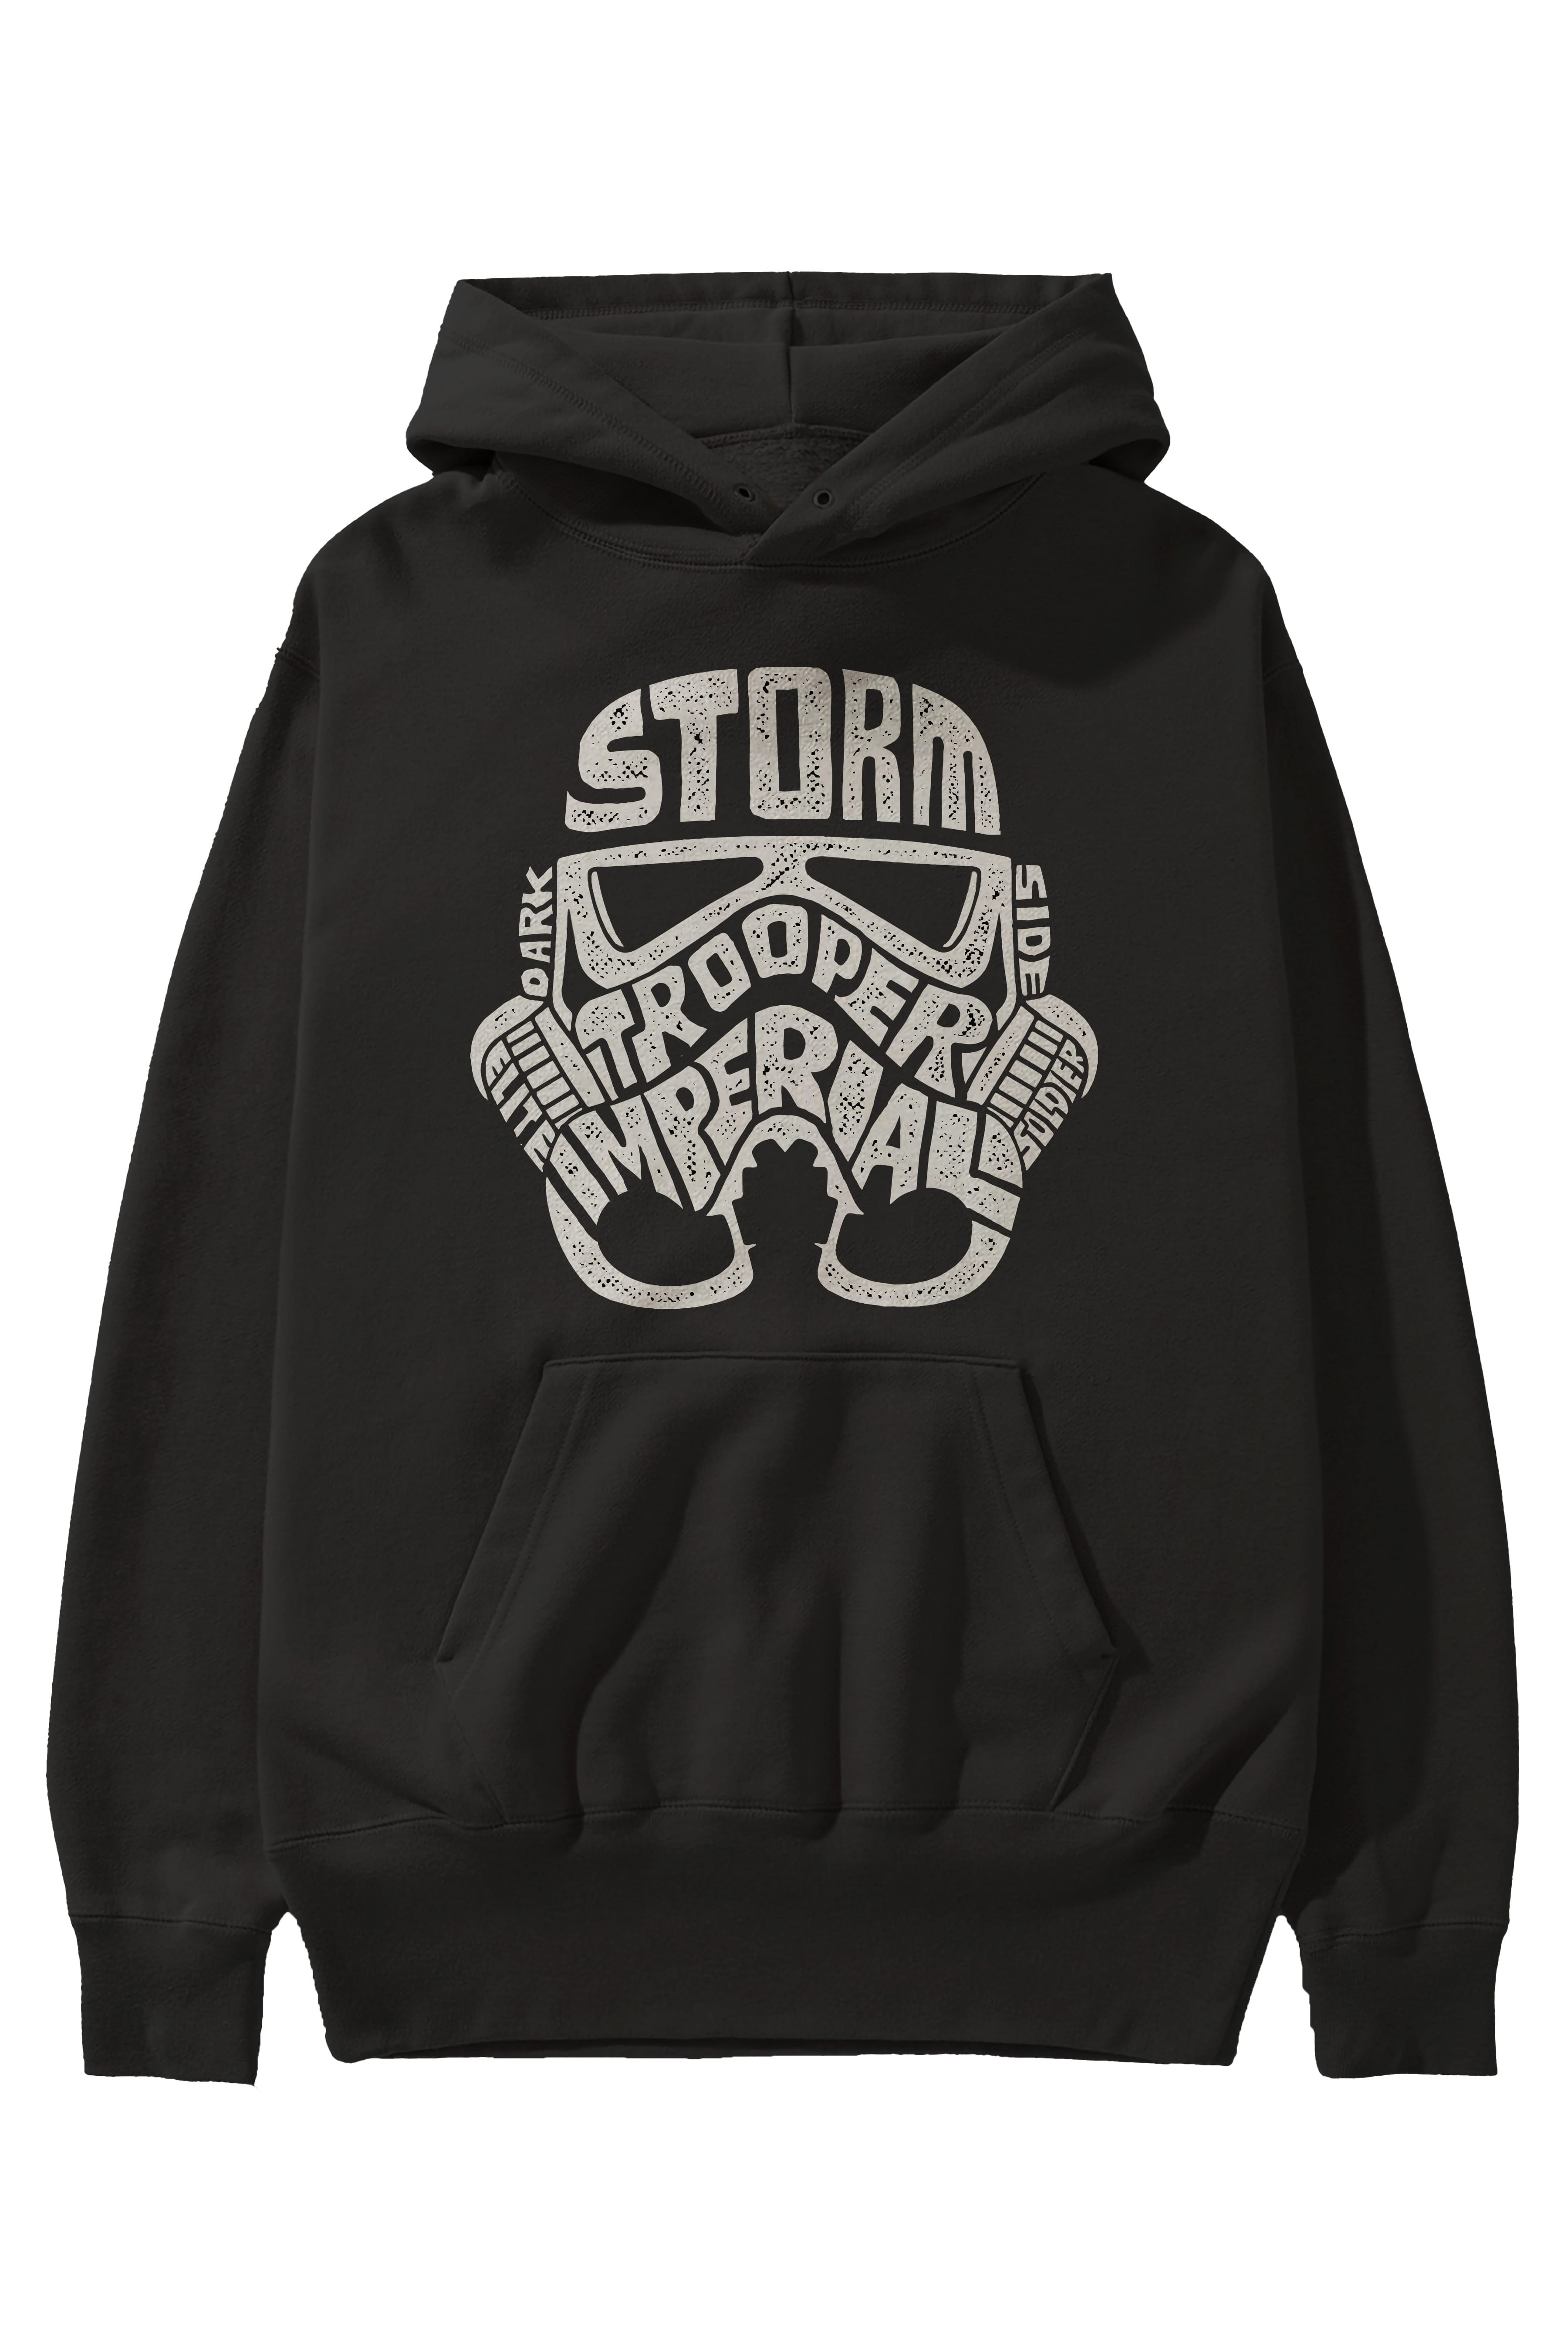 Storm Trooper Ön Baskılı Hoodie Oversize Kapüşonlu Sweatshirt Erkek Kadın Unisex